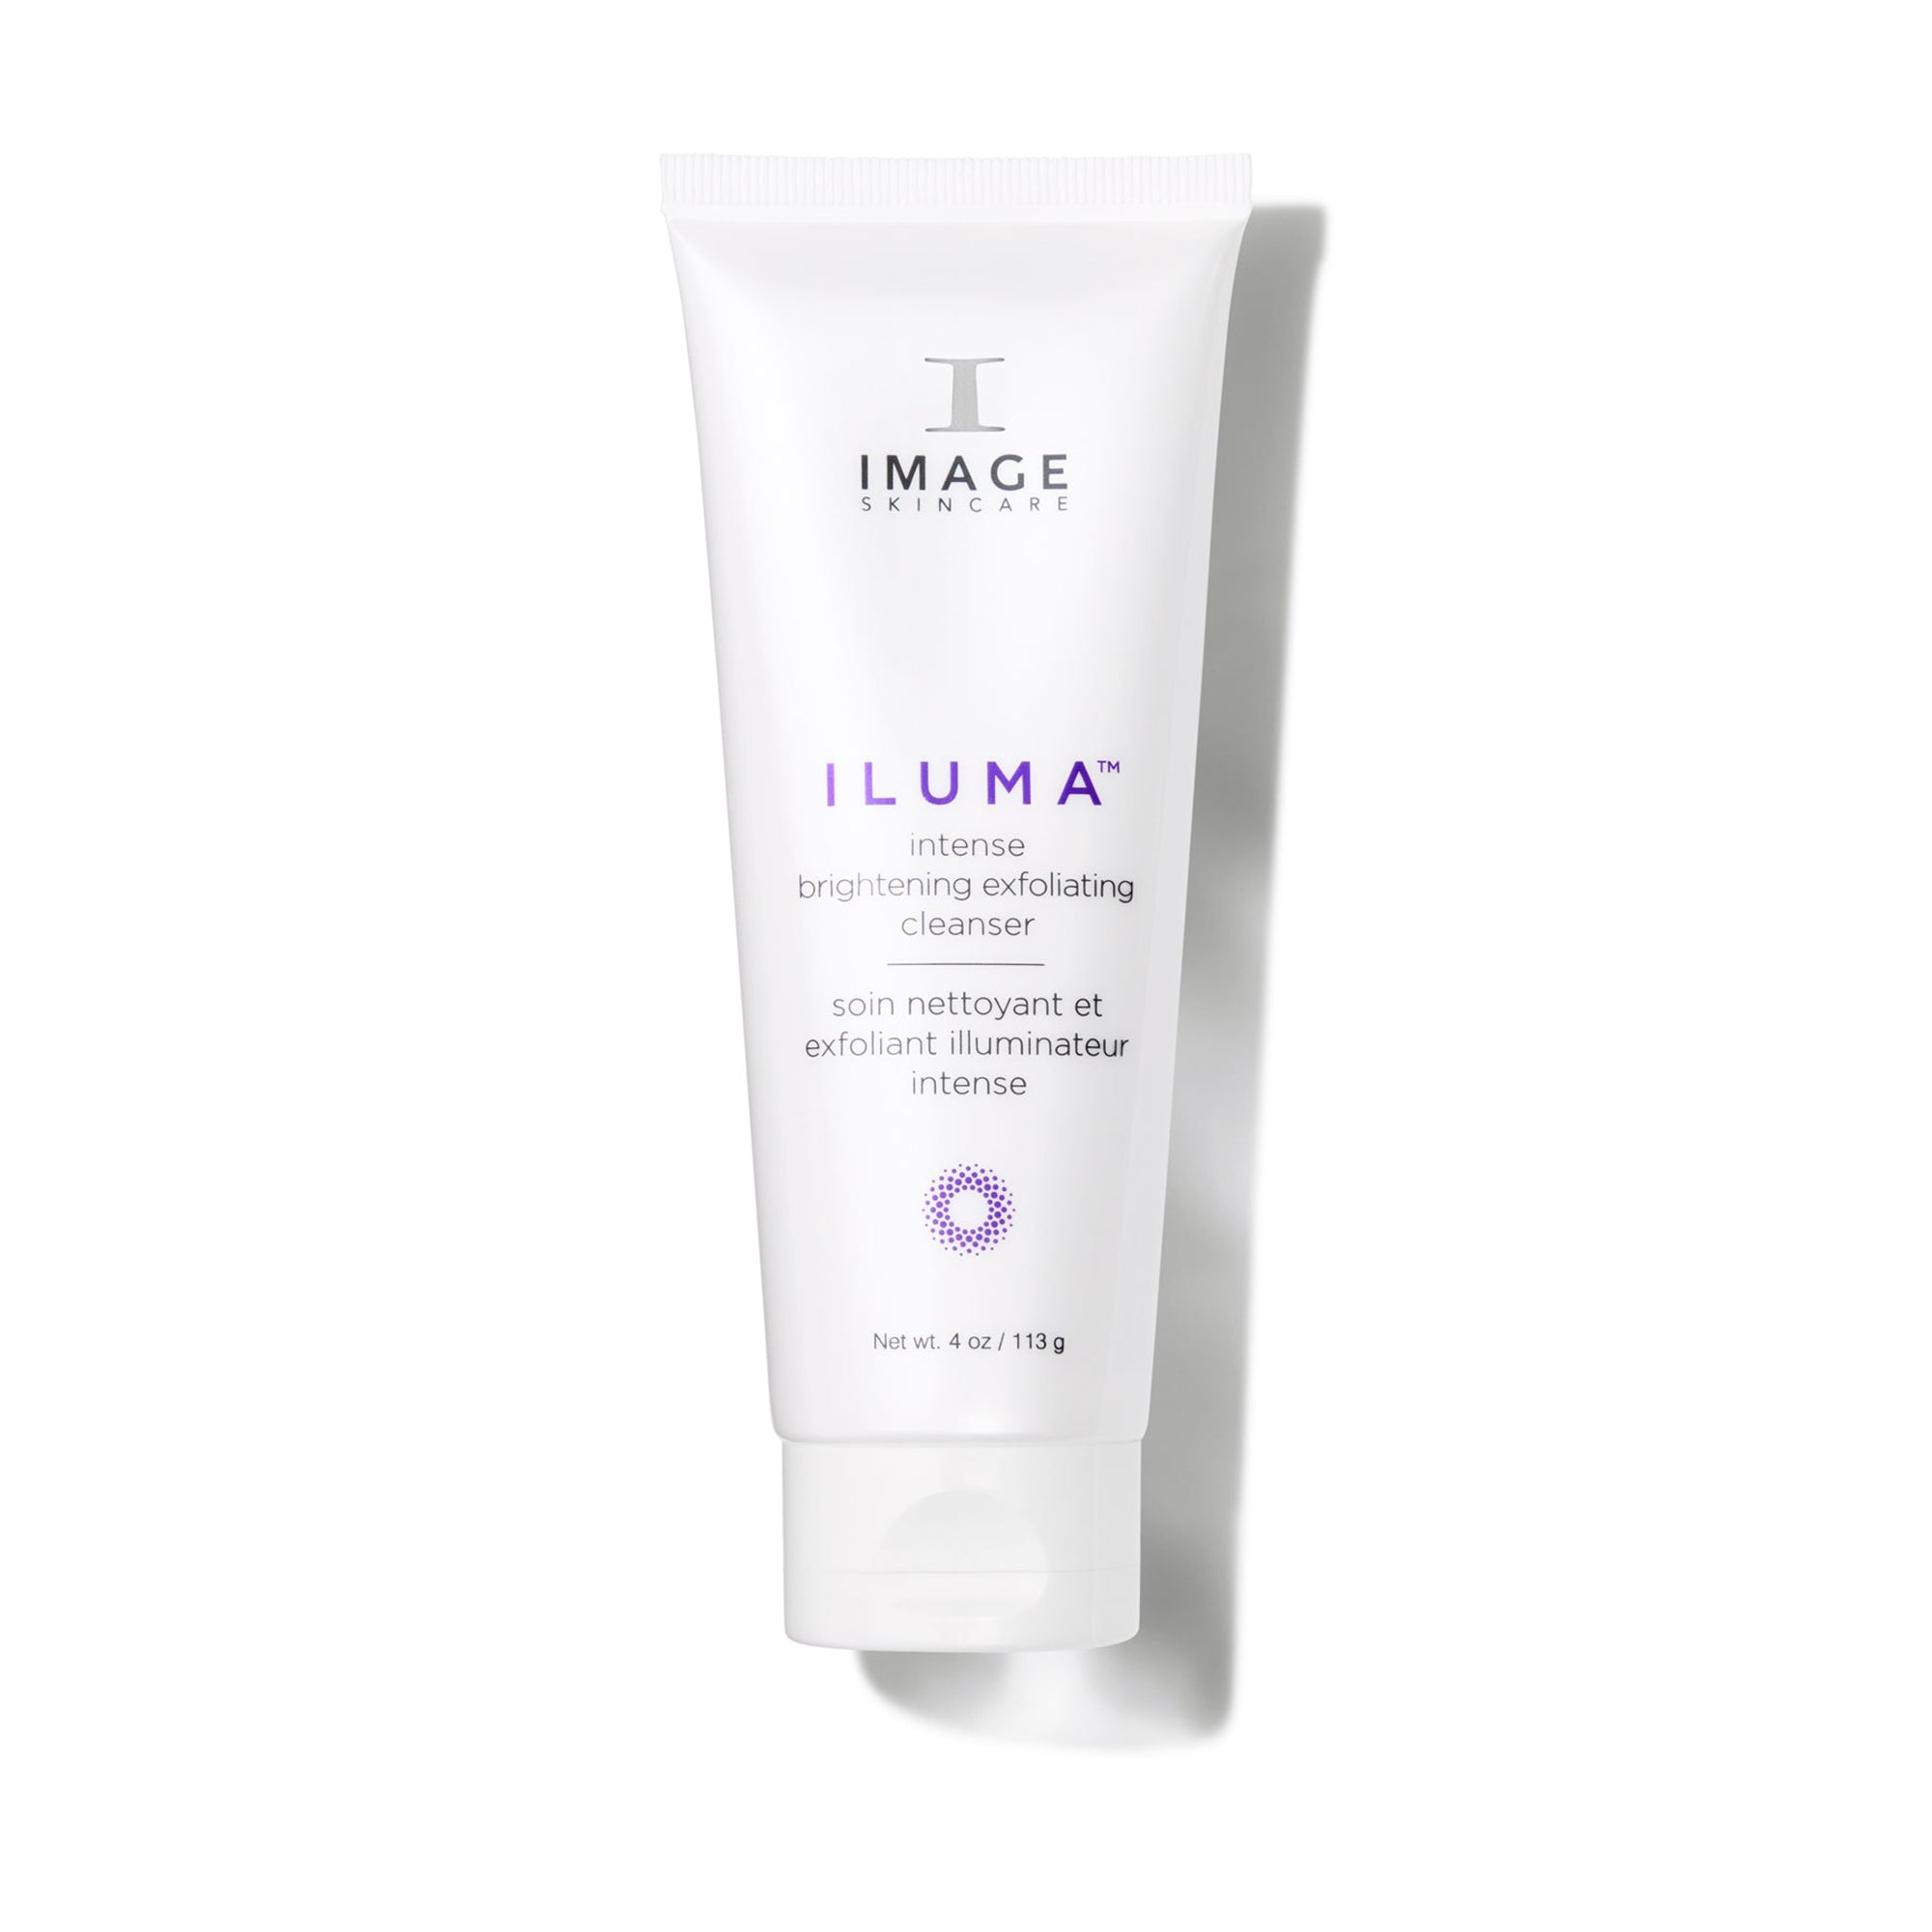 Image Skincare Iluma Intense Brightening Exfoliating Cleanser / 4OZ